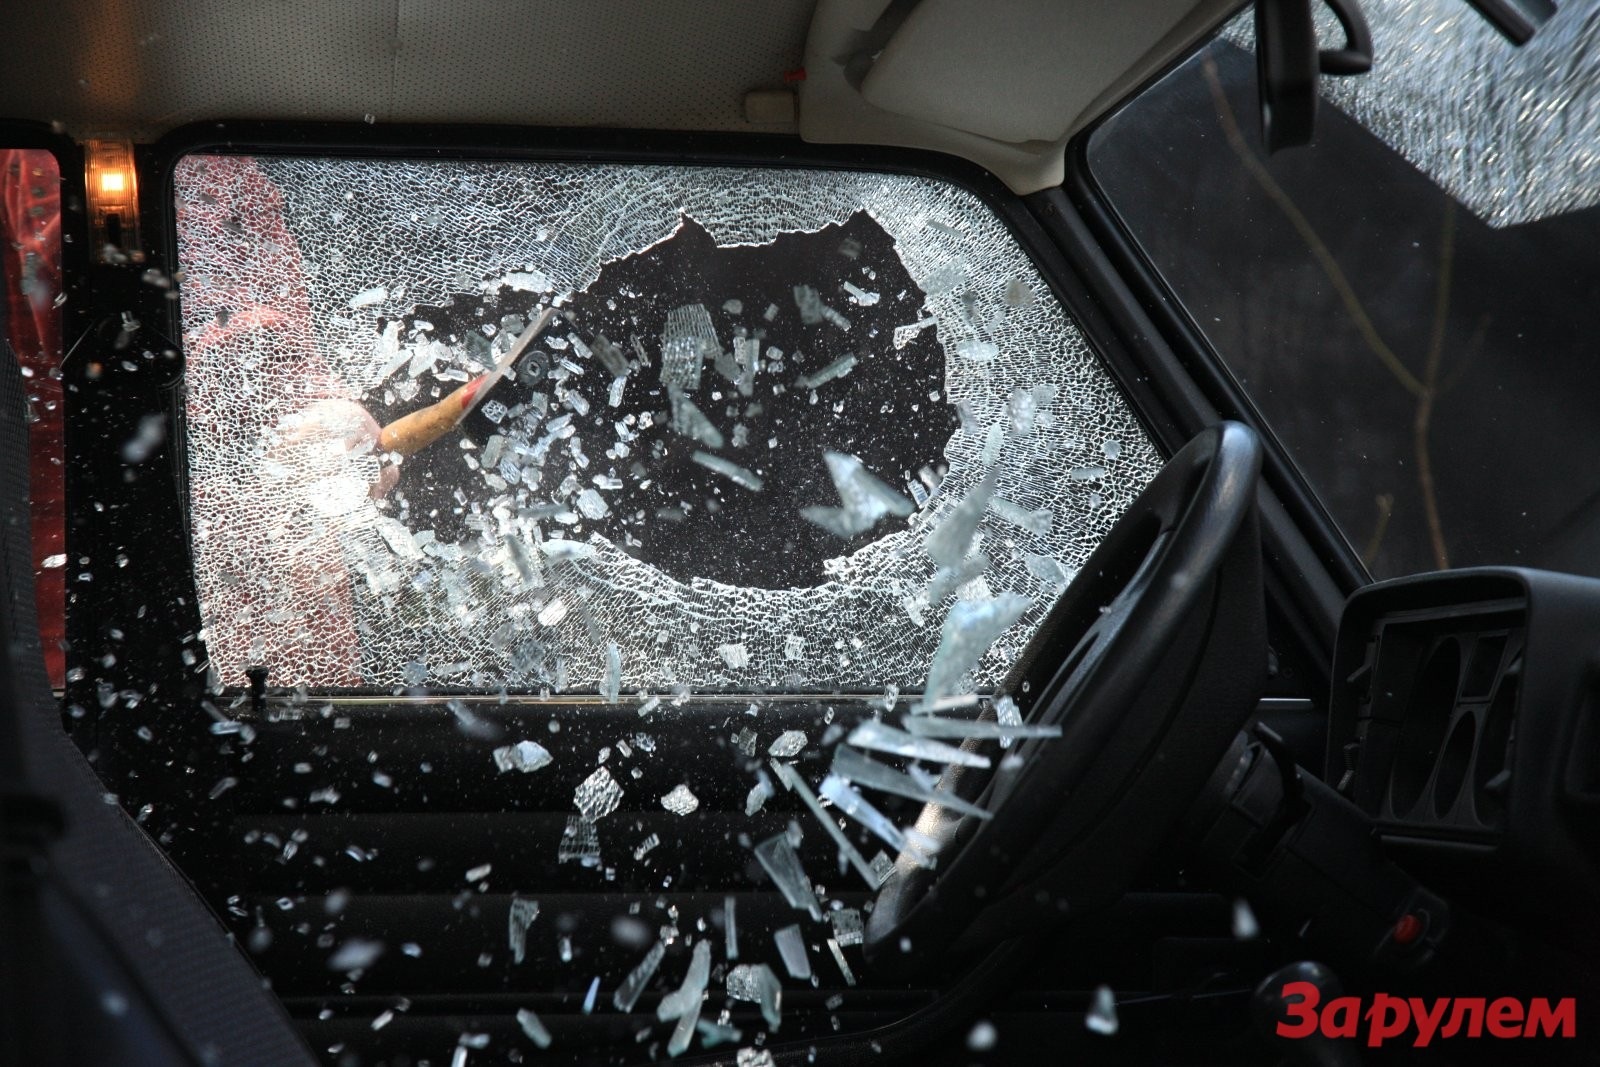 Разбиты окна машин. Разбитые стекла в машине. Разбитое окно машины. Разбивает стекло авто. Разбить окно автомобиля.